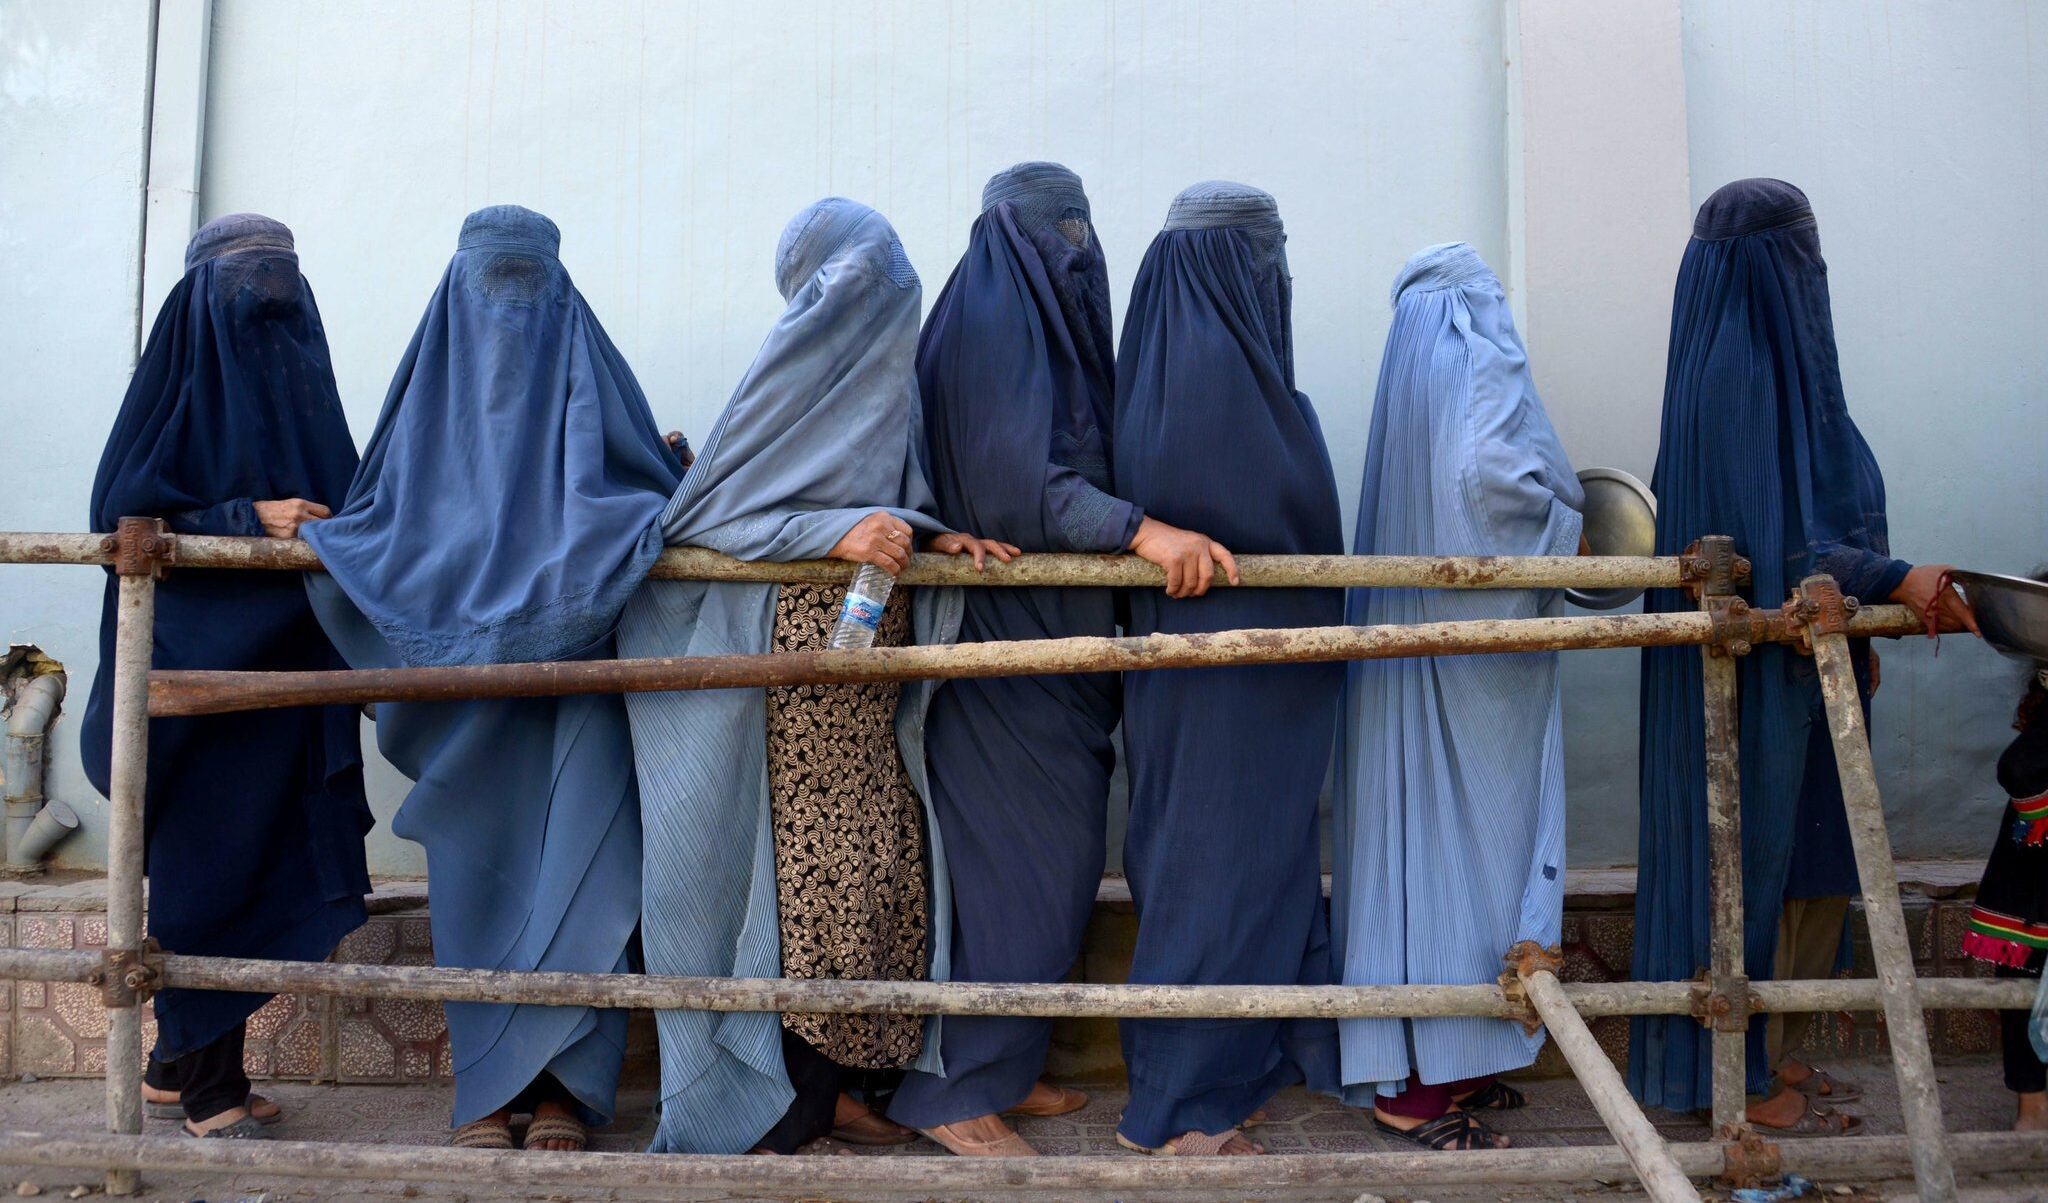 L'Afghanistan talebano: Ong senza donne mentre il mondo chiude gli occhi